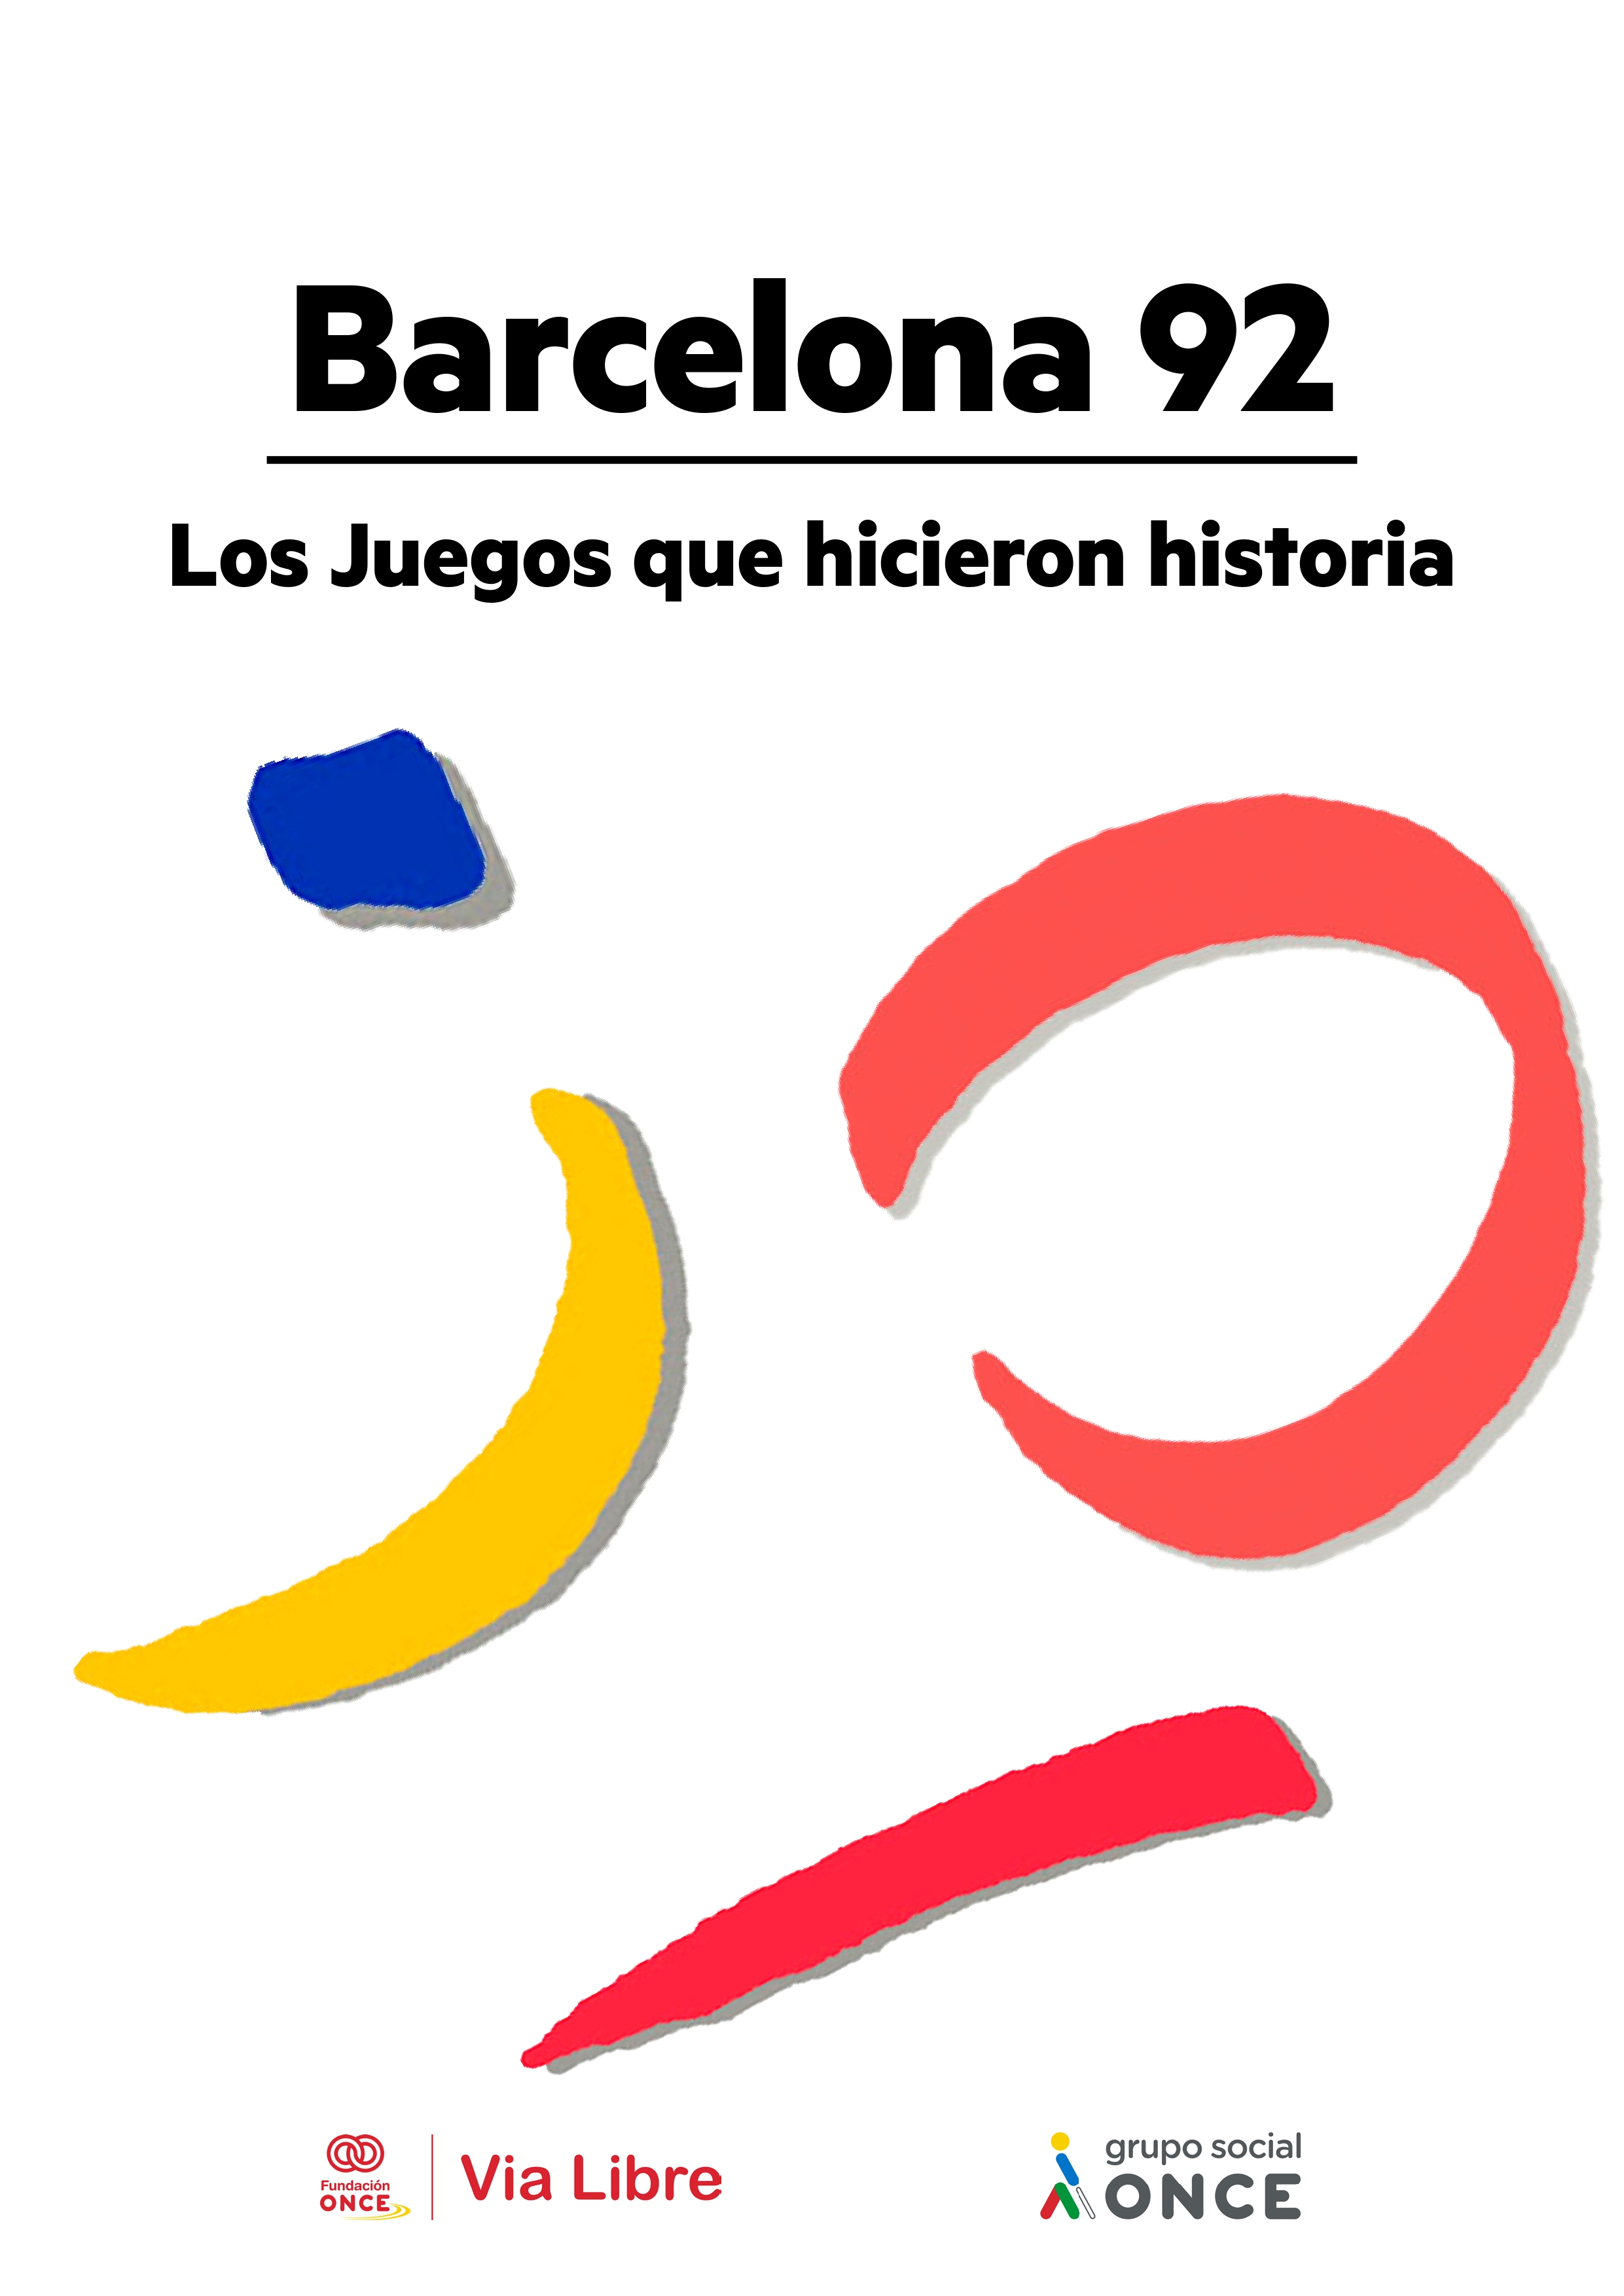 Portada libro 'Barcelona92.Los juegos que hicieron historia'